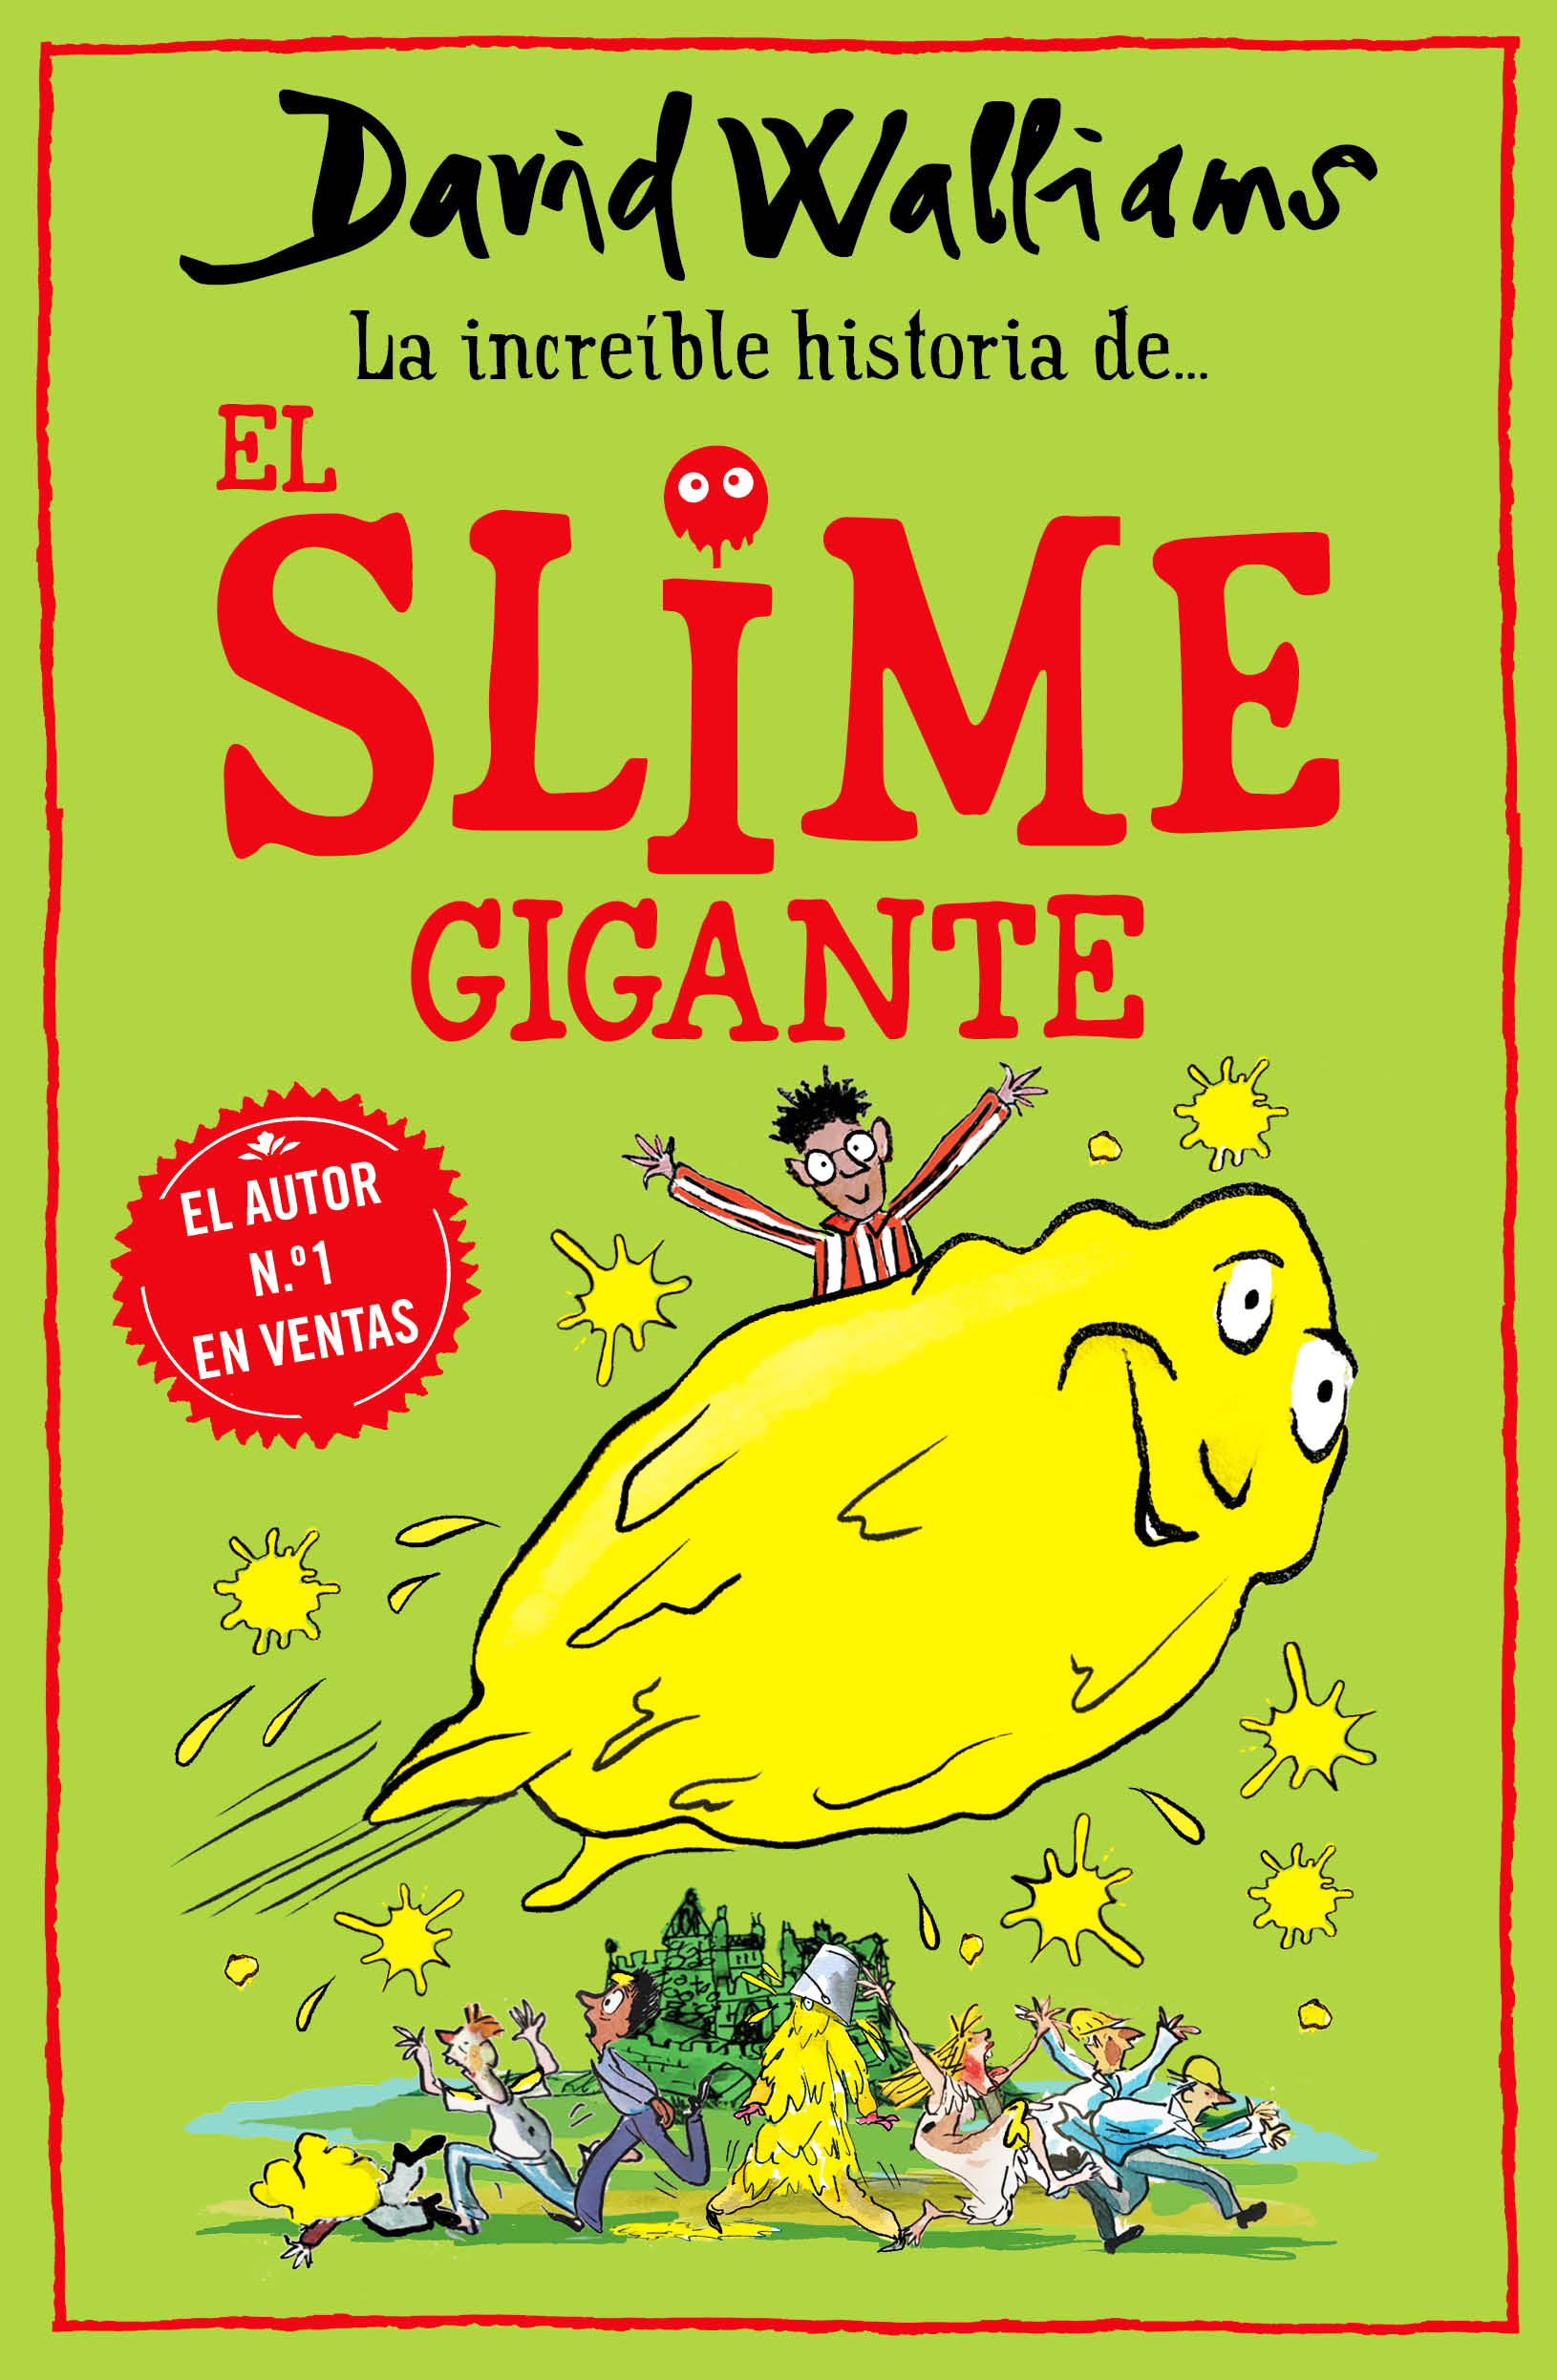 La increíble historia de… El slime gigante, de David Walliams